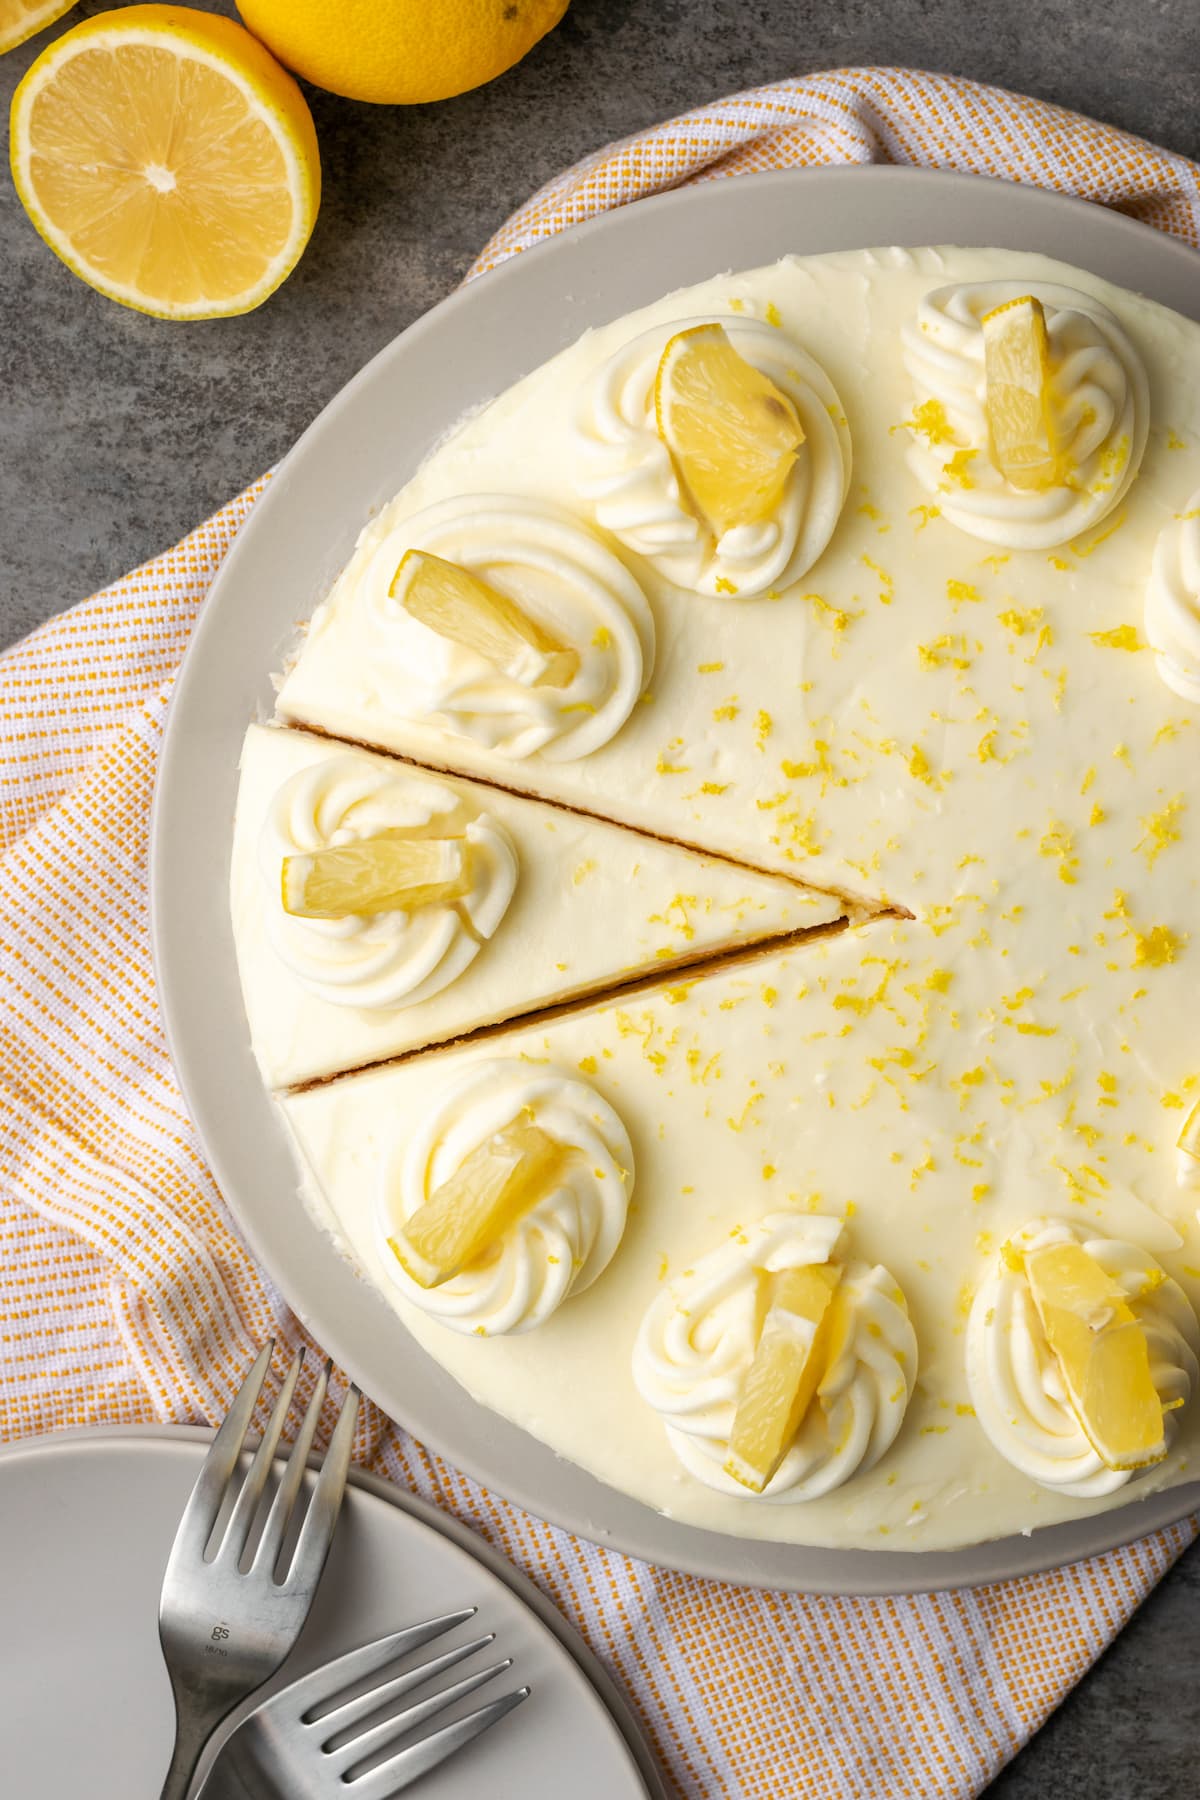 Vista superior del pastel de limonada con remolinos de glaseado y rodajas de limón, con rodajas cortadas.